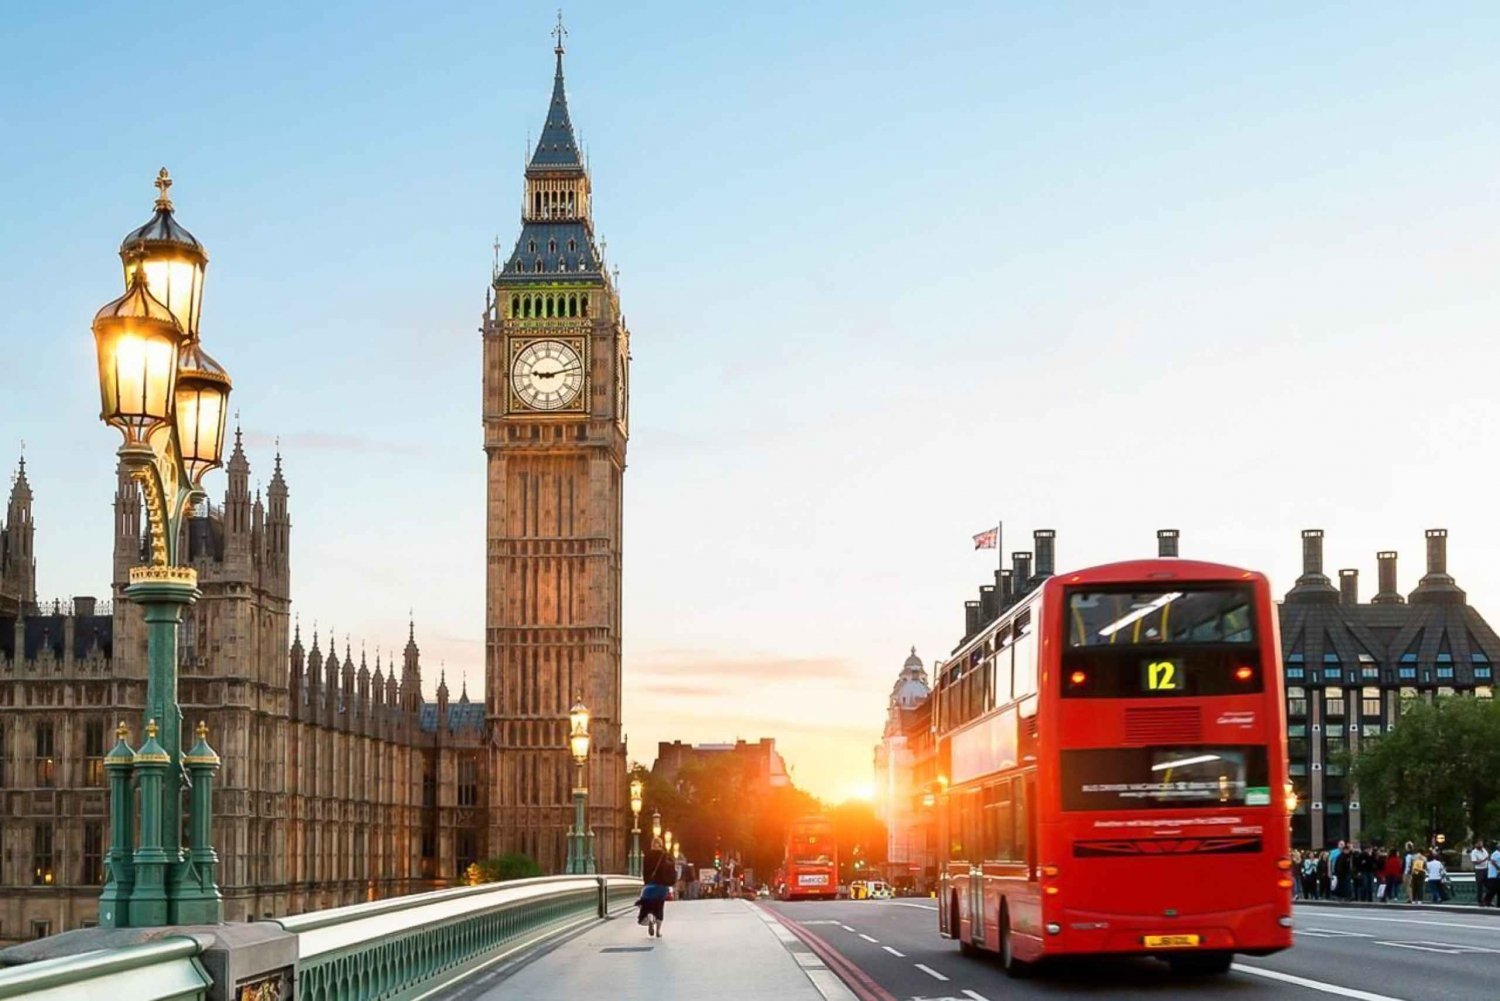 Londen: 30 Londense bezienswaardigheden rondleiding met gids